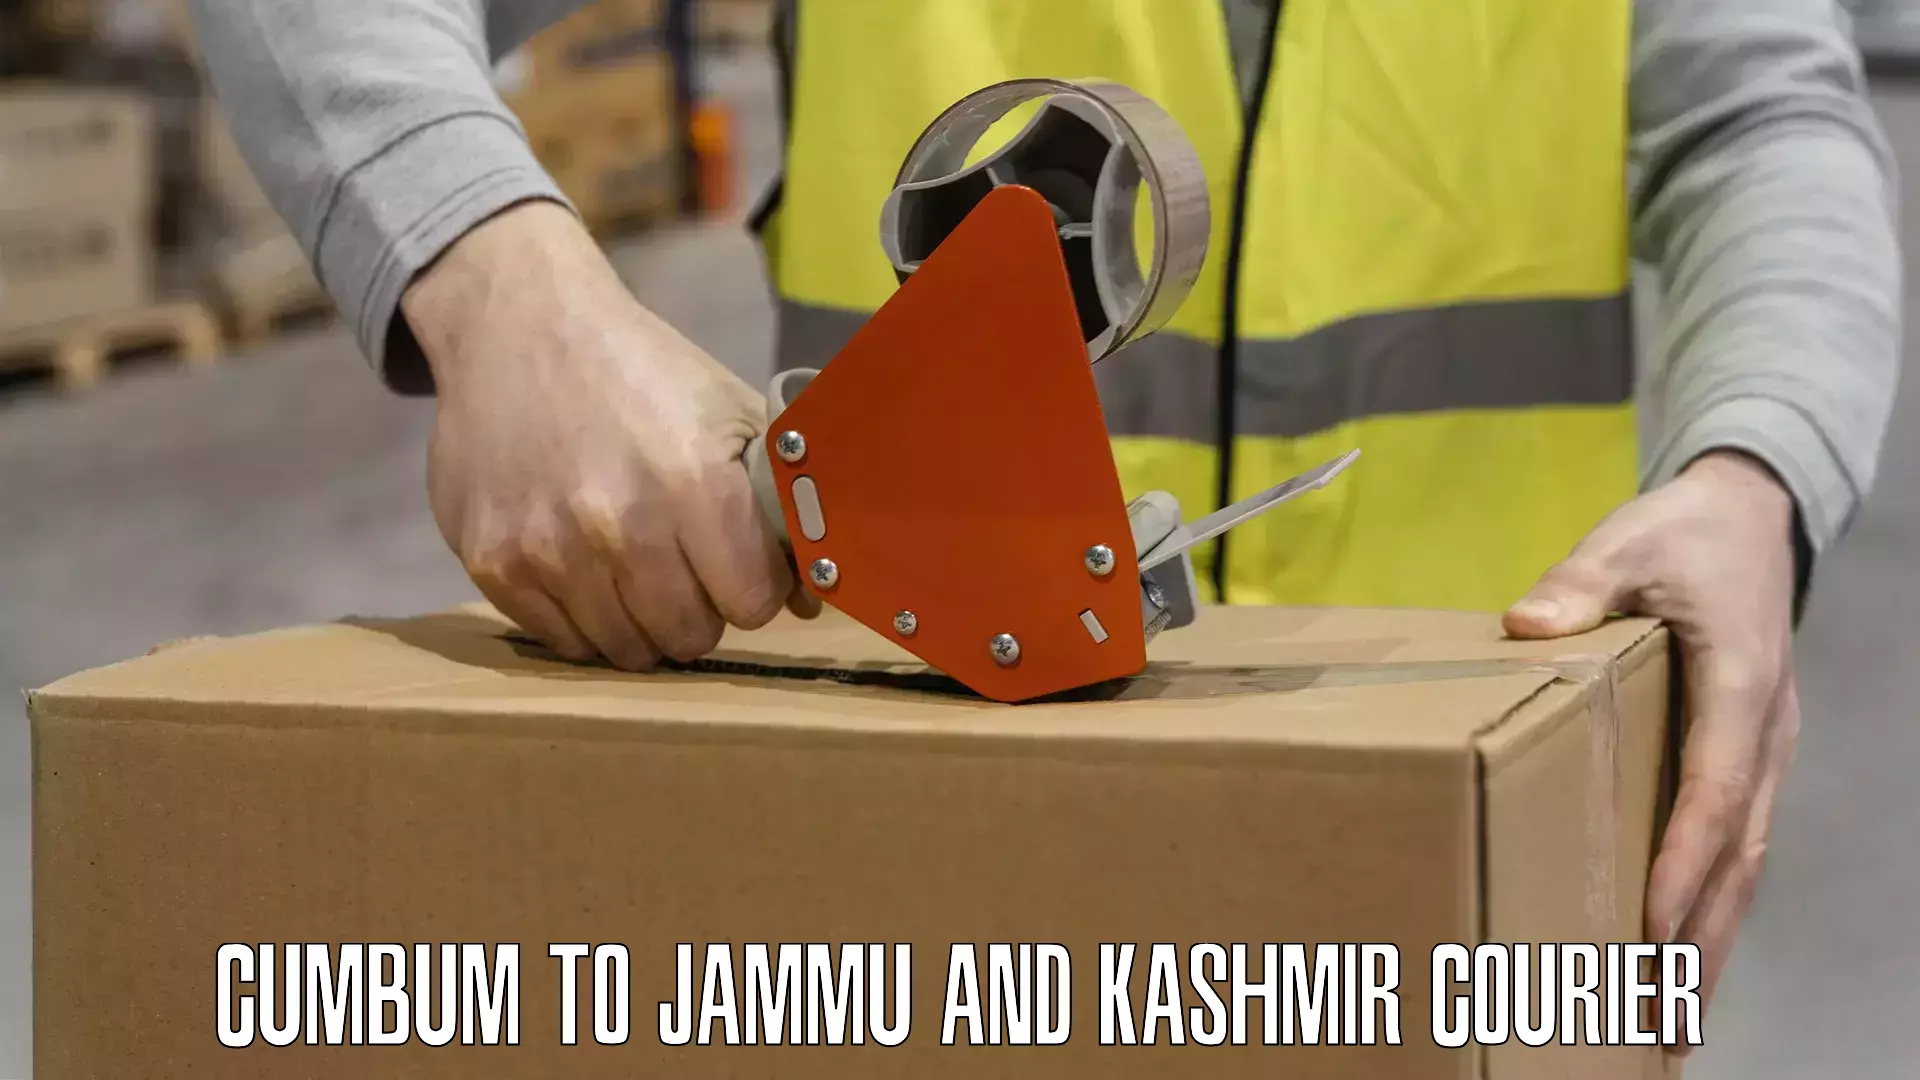 Efficient freight service Cumbum to Jammu and Kashmir